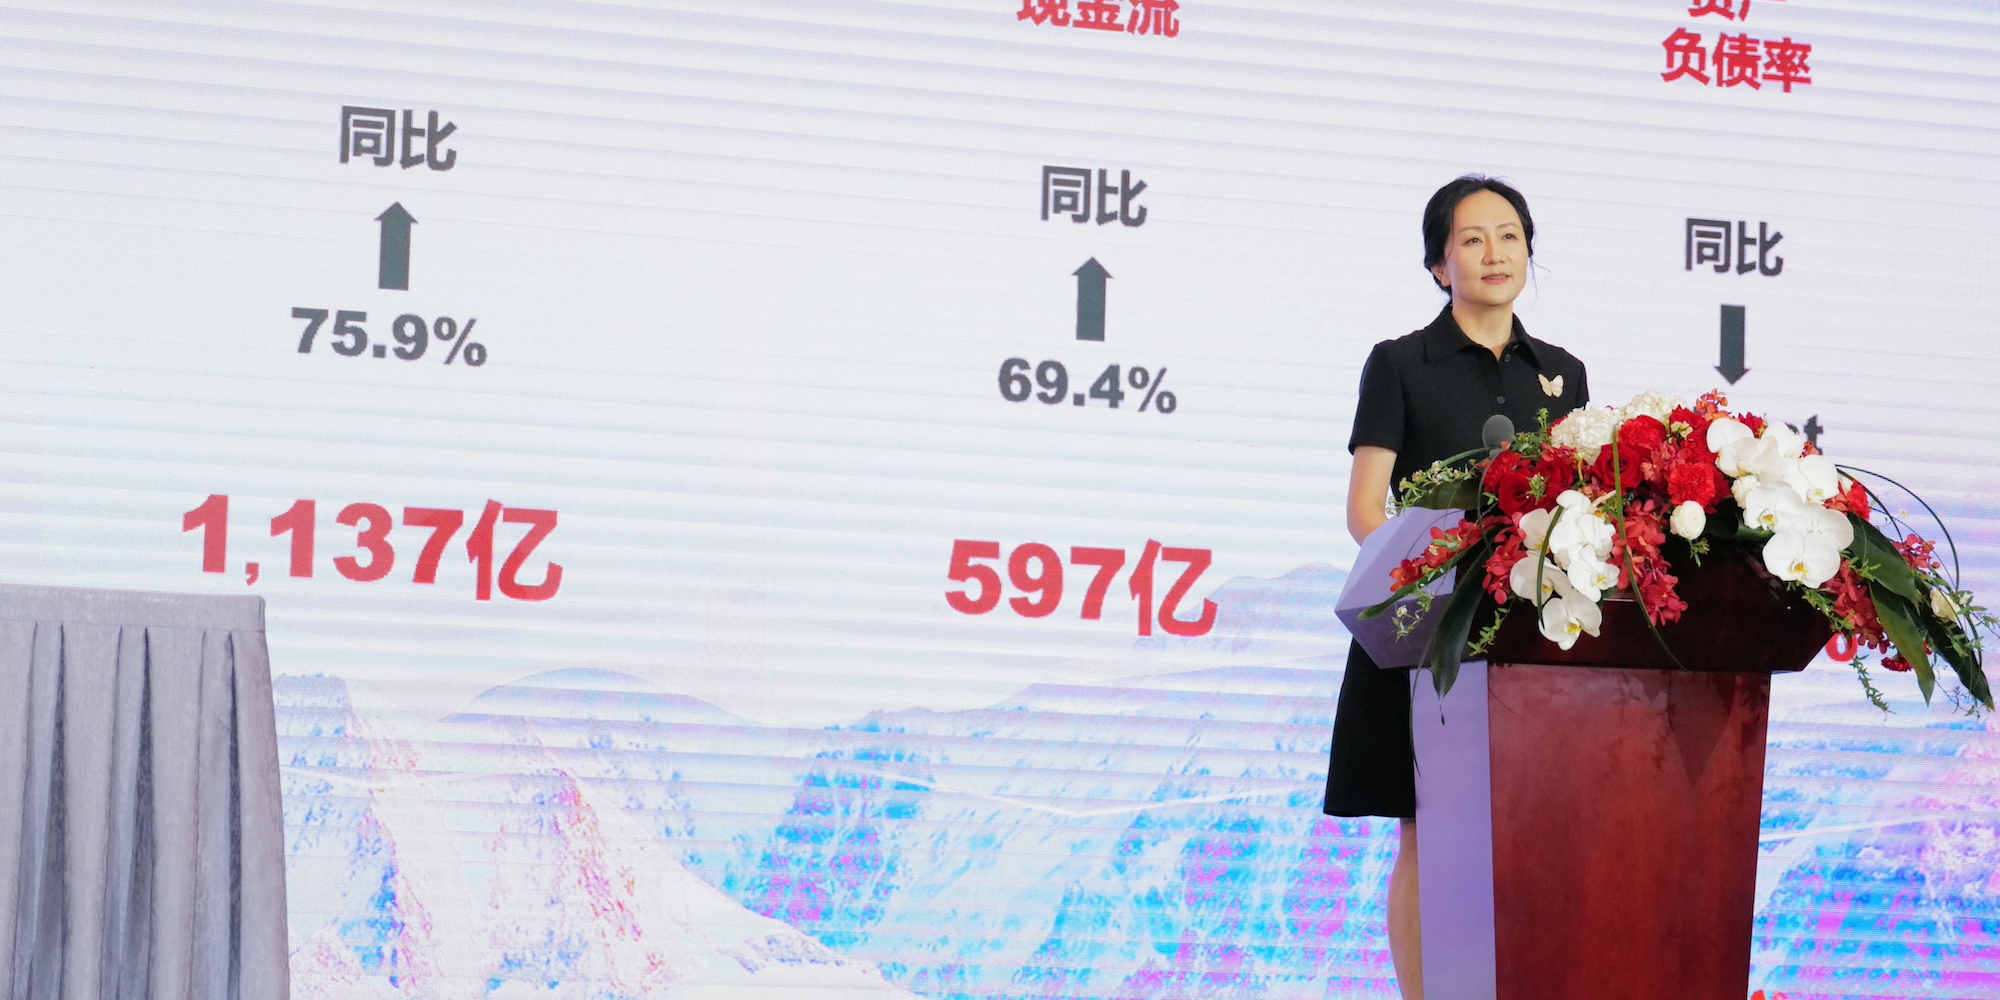 Symbole de la guerre technologique entre la Chine et les Etats-Unis, Meng Wanzhou prend la tête de Huawei